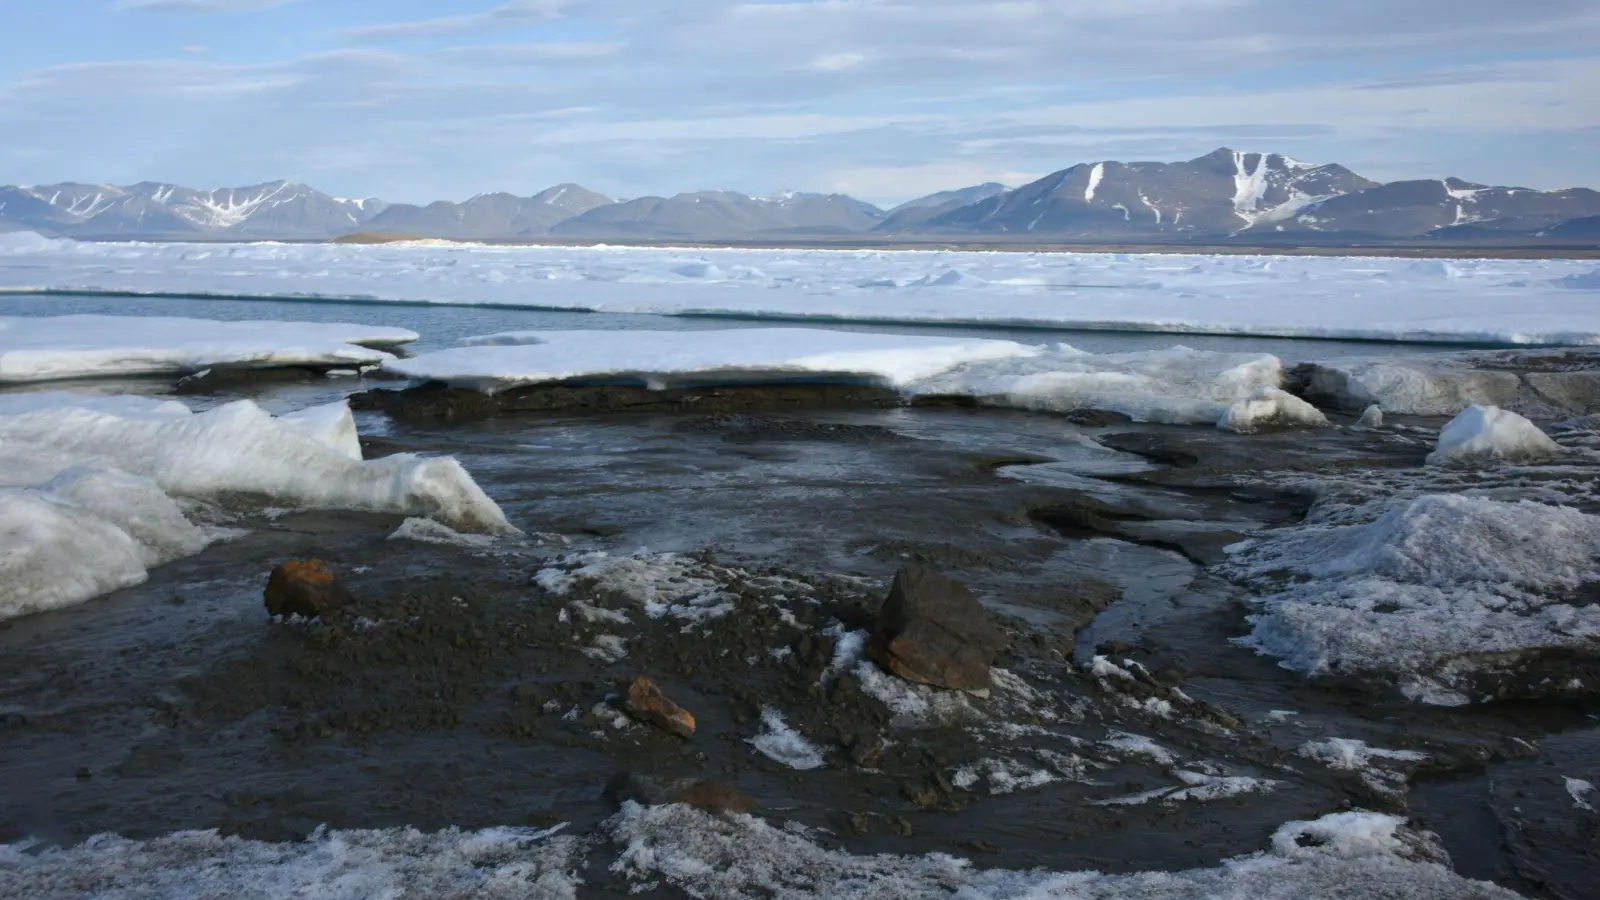 Blick auf die vermeintlich nördlichste Insel der Welt. Die Insel ist in Wirklichkeit ein Eisberg. Das haben Wissenschaftler aus Dänemark und der Schweiz herausgefunden, die ein 2021 entdecktes Eiland neben weiteren Inselchen nördlich von Grönland untersucht haben. (Foto: Morten Rasch/Universität Kopenhagen/dpa)